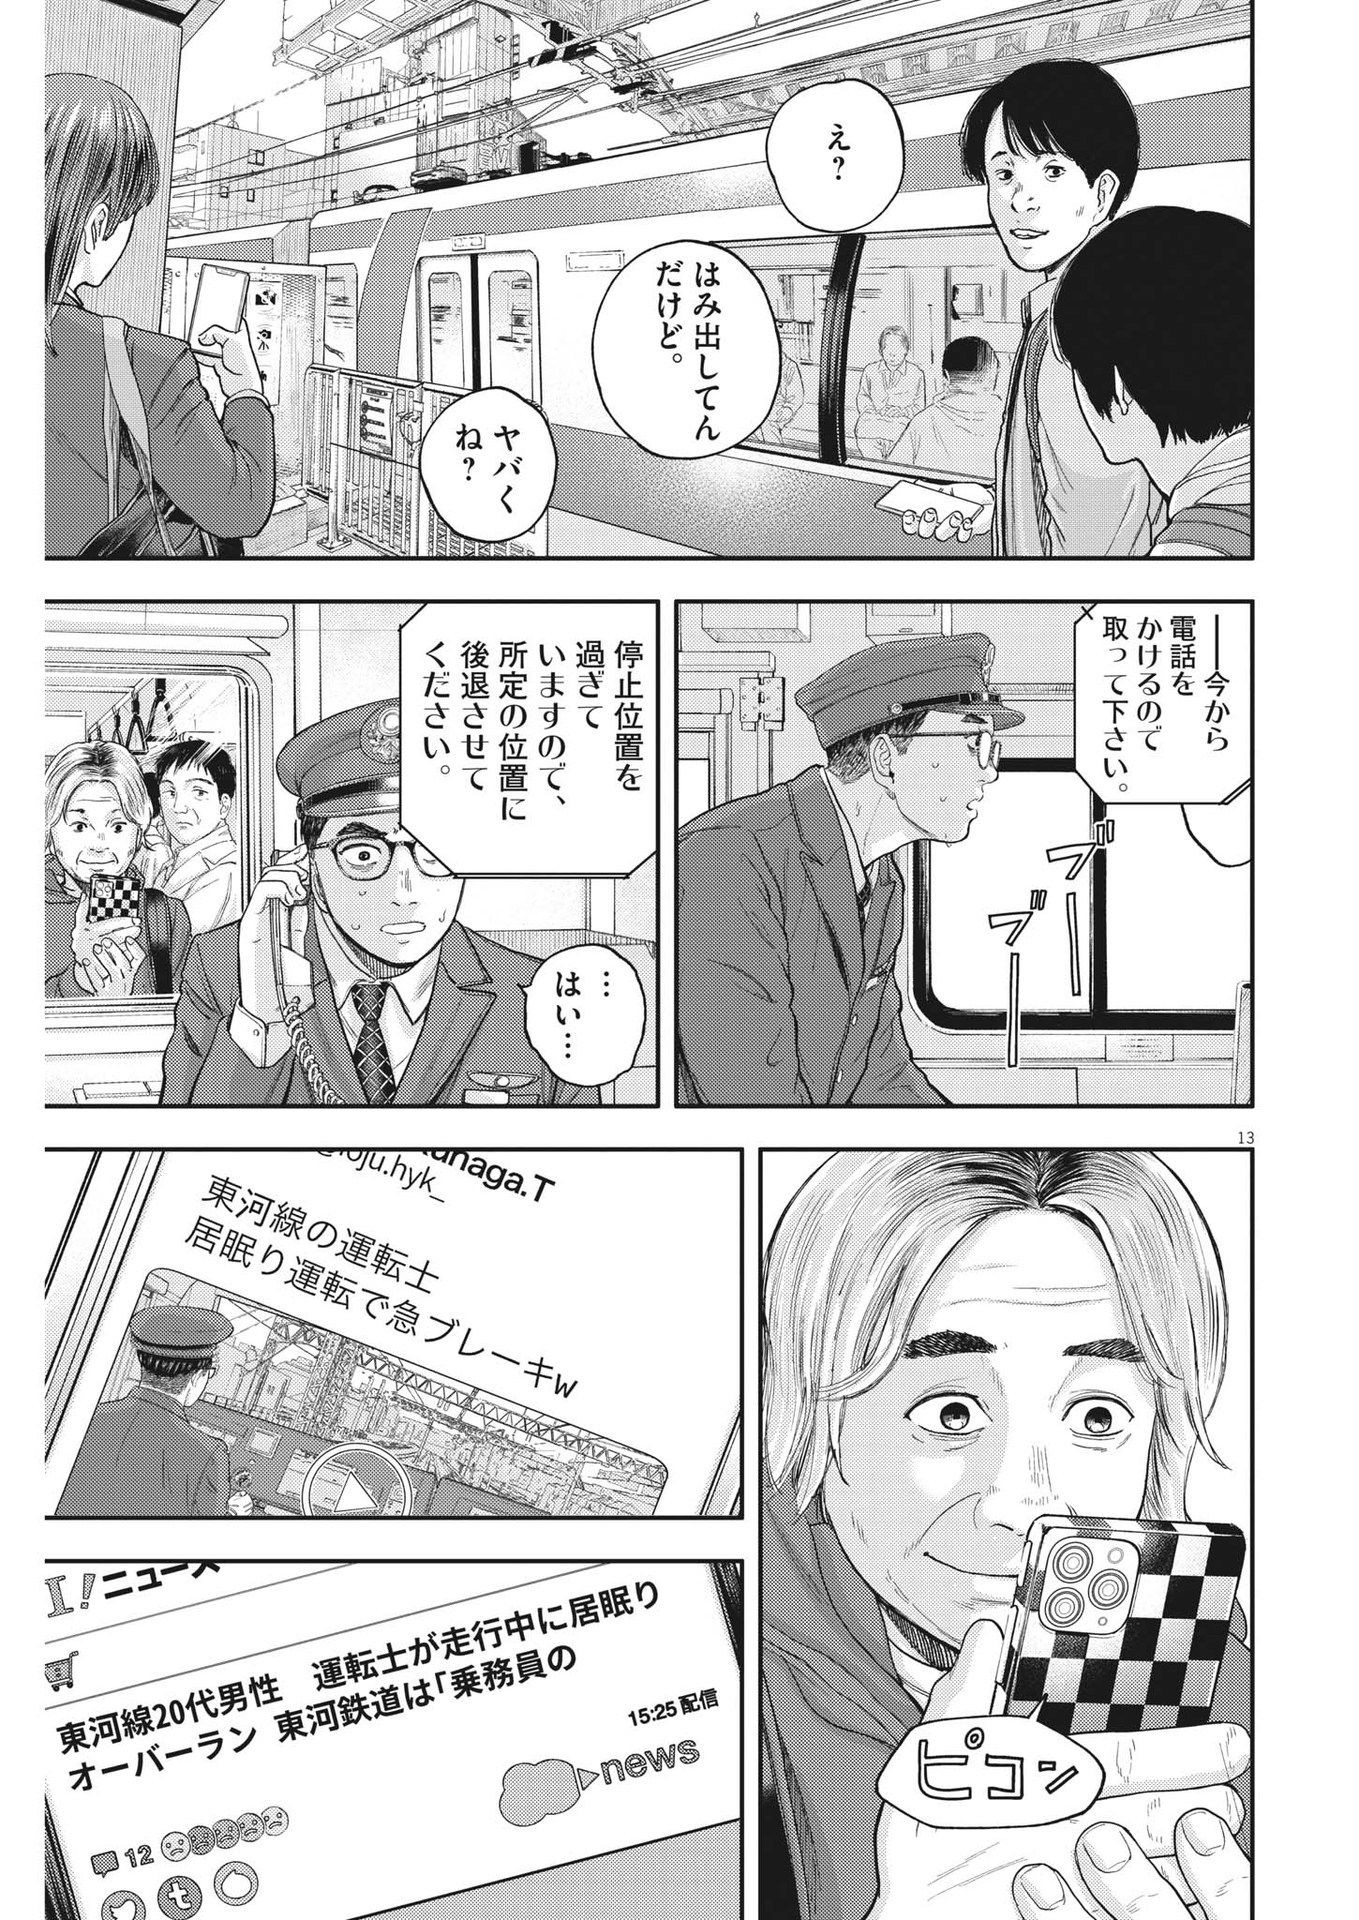 Yumenashi-sensei no Shinroshidou - Chapter 4 - Page 13